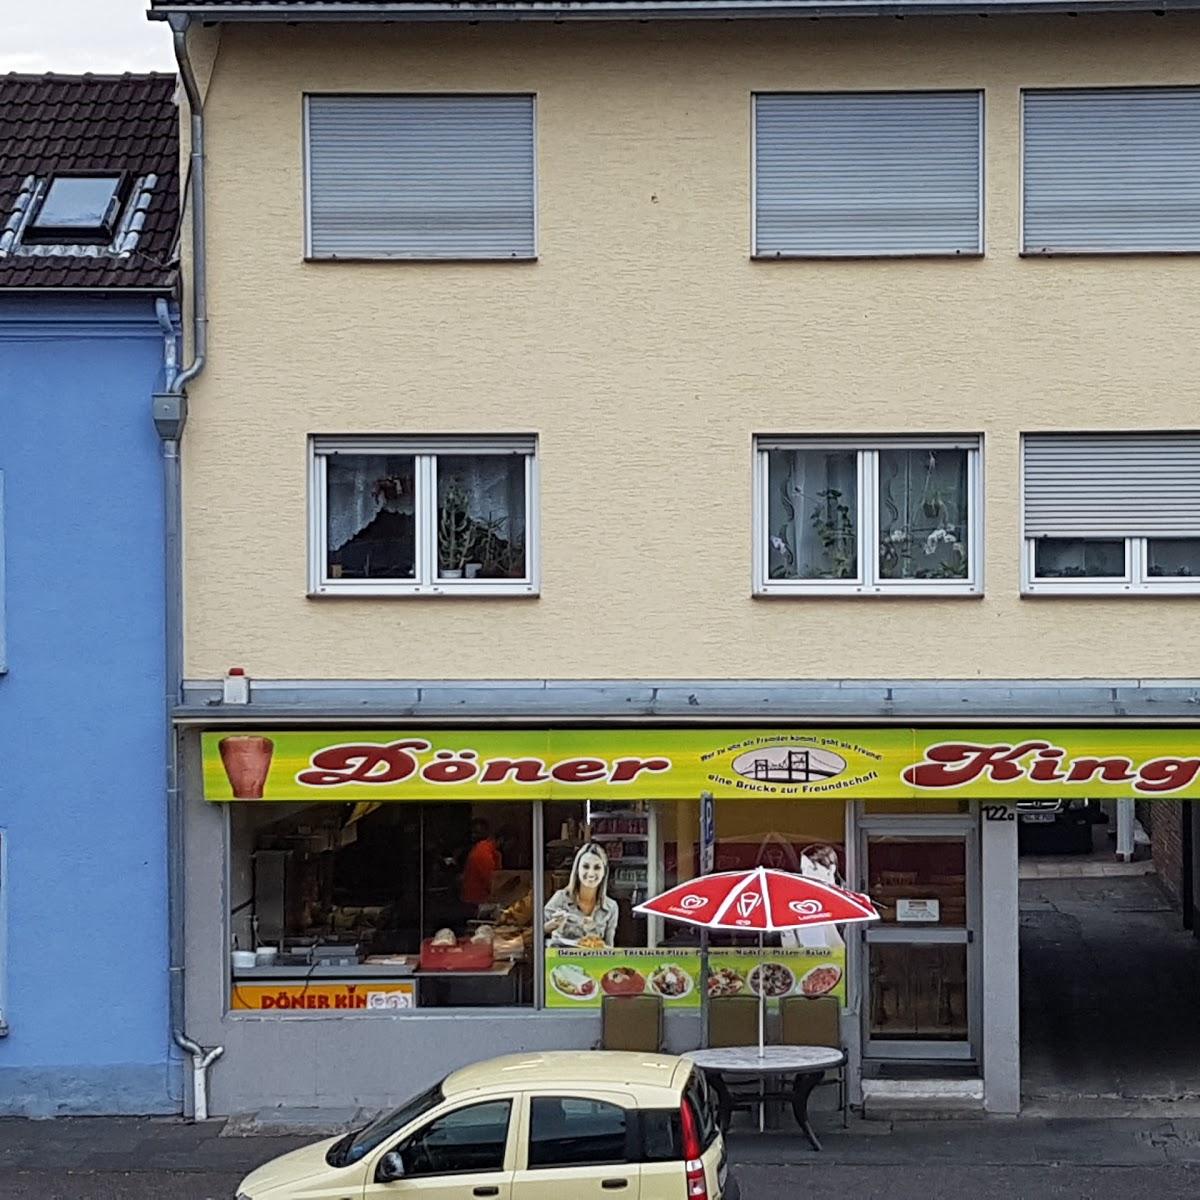 Restaurant "Döner King" in  Lohmar